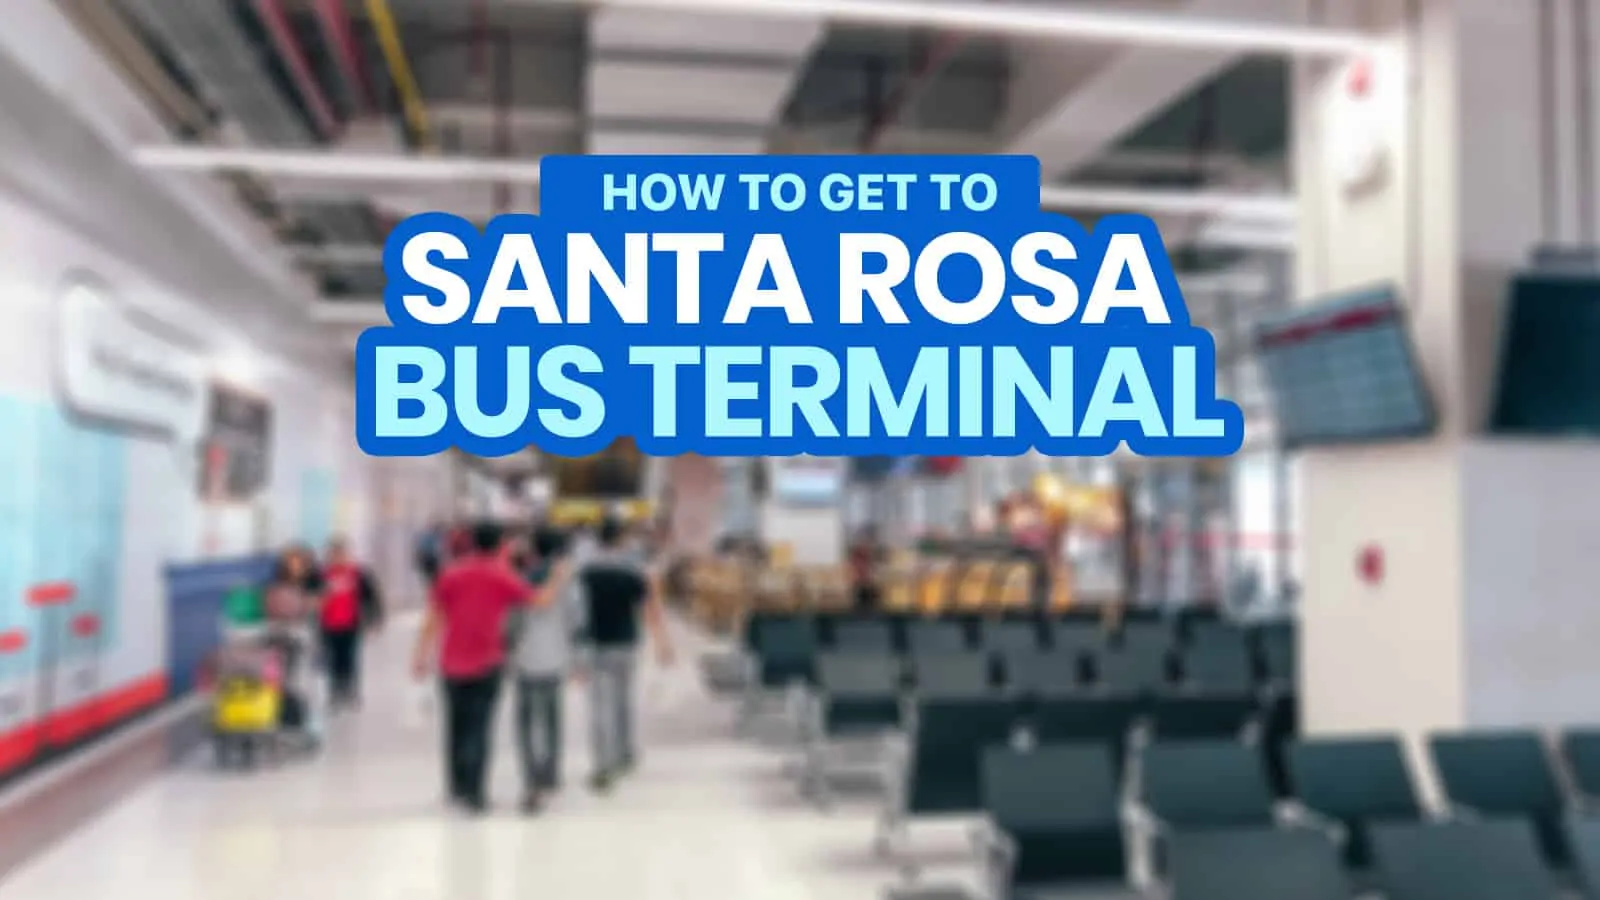 从马尼拉到圣罗莎综合巴士总站，拉古那:如何到达那里